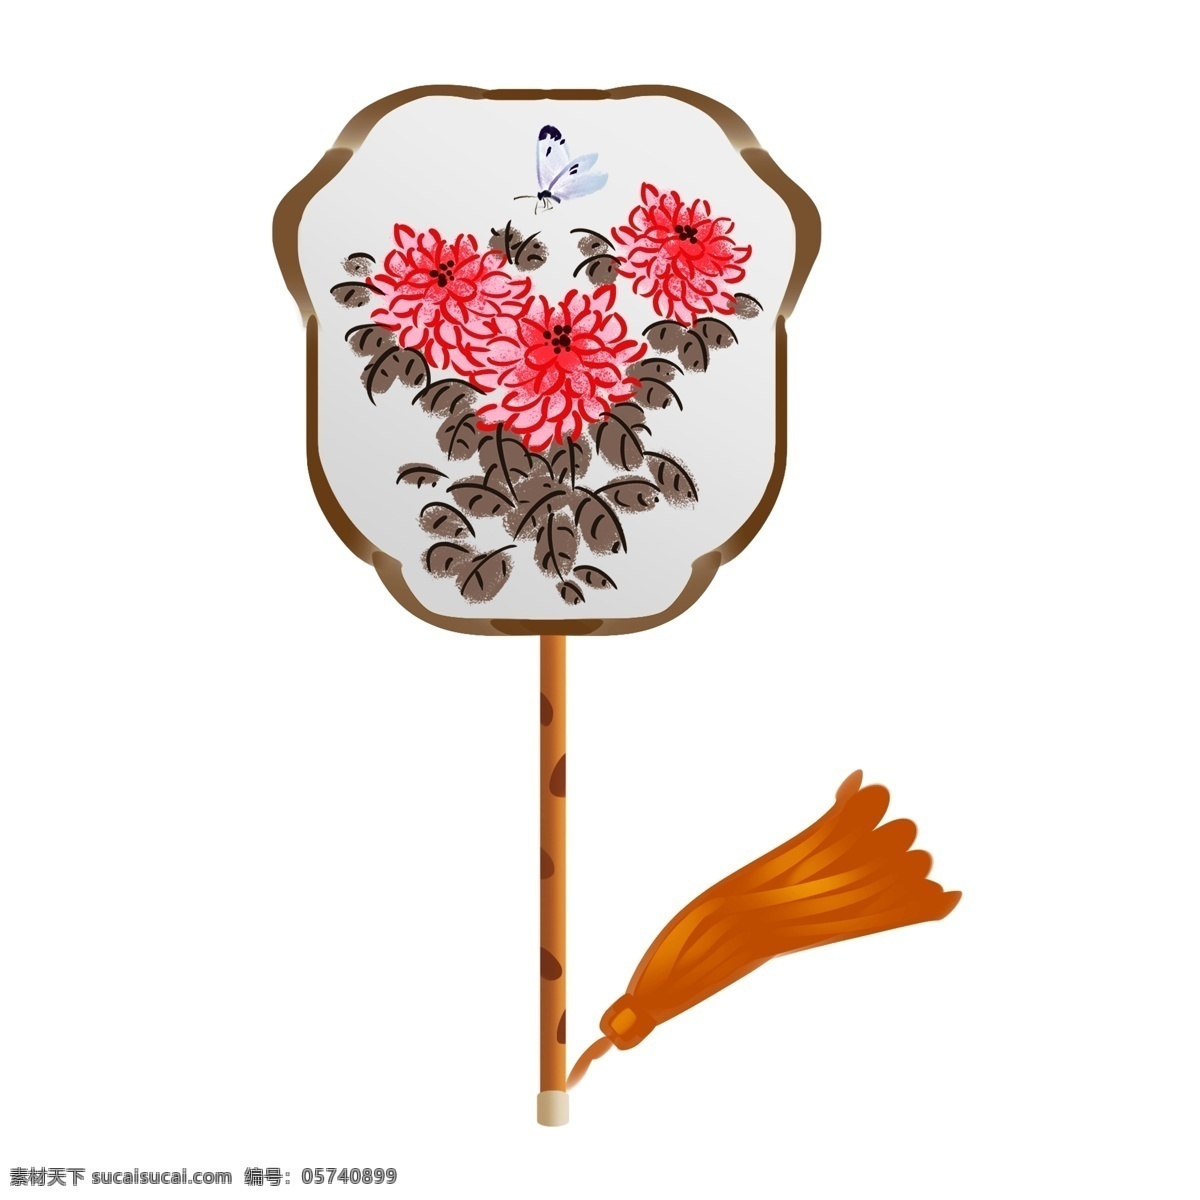 中国 古典 印花 扇子 水墨风 插画 中国风扇子 浅绿色扇子 卡通扇子 红色鲜花 花朵扇子